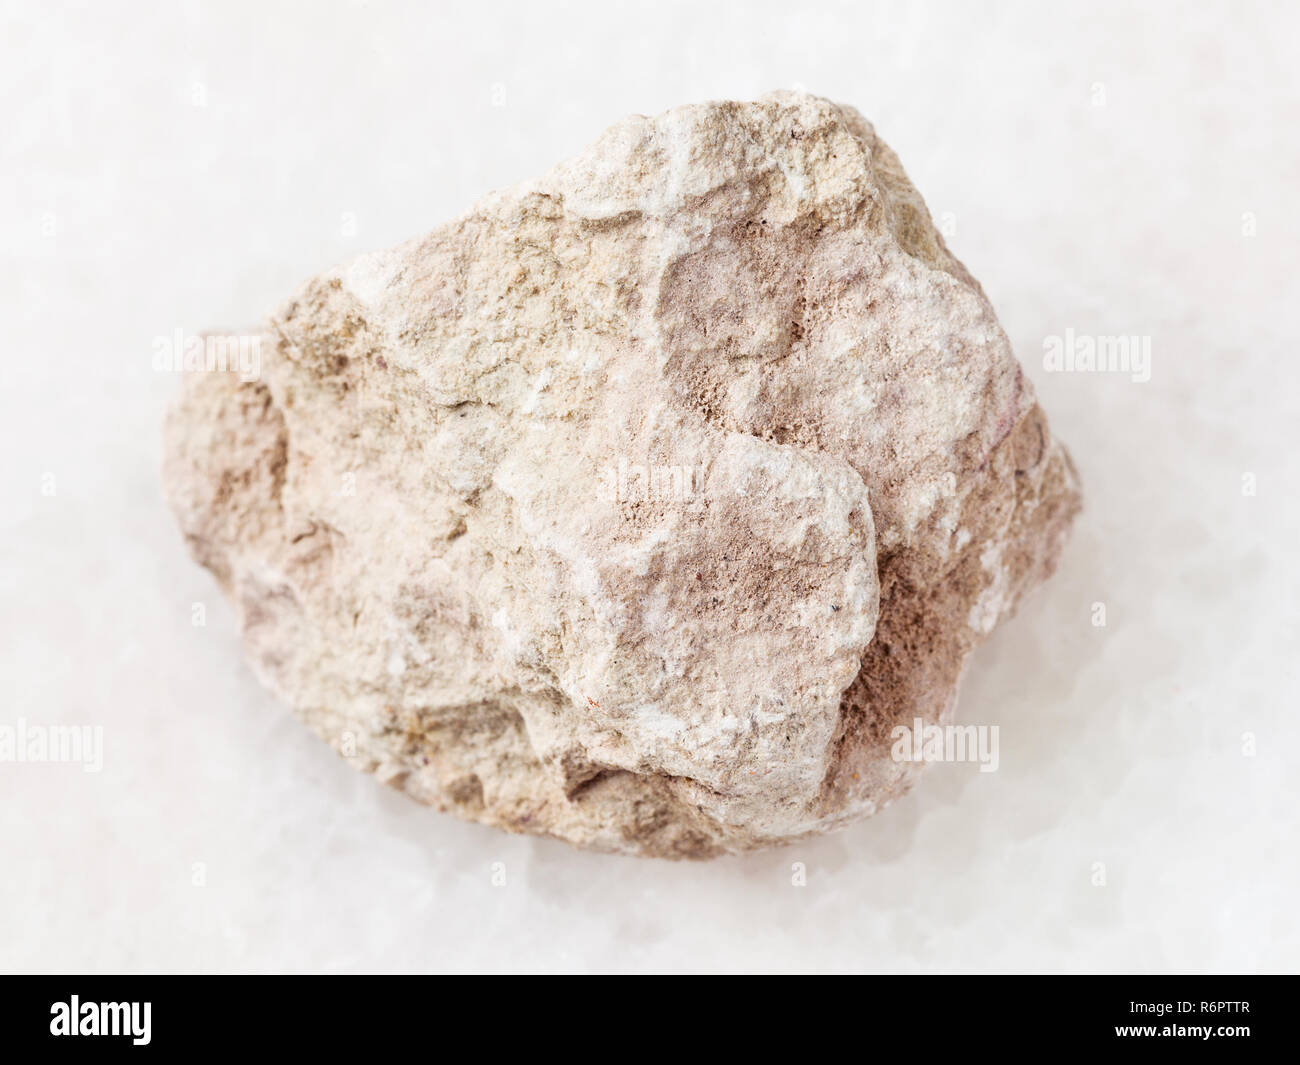 raw marl stone on white Stock Photo